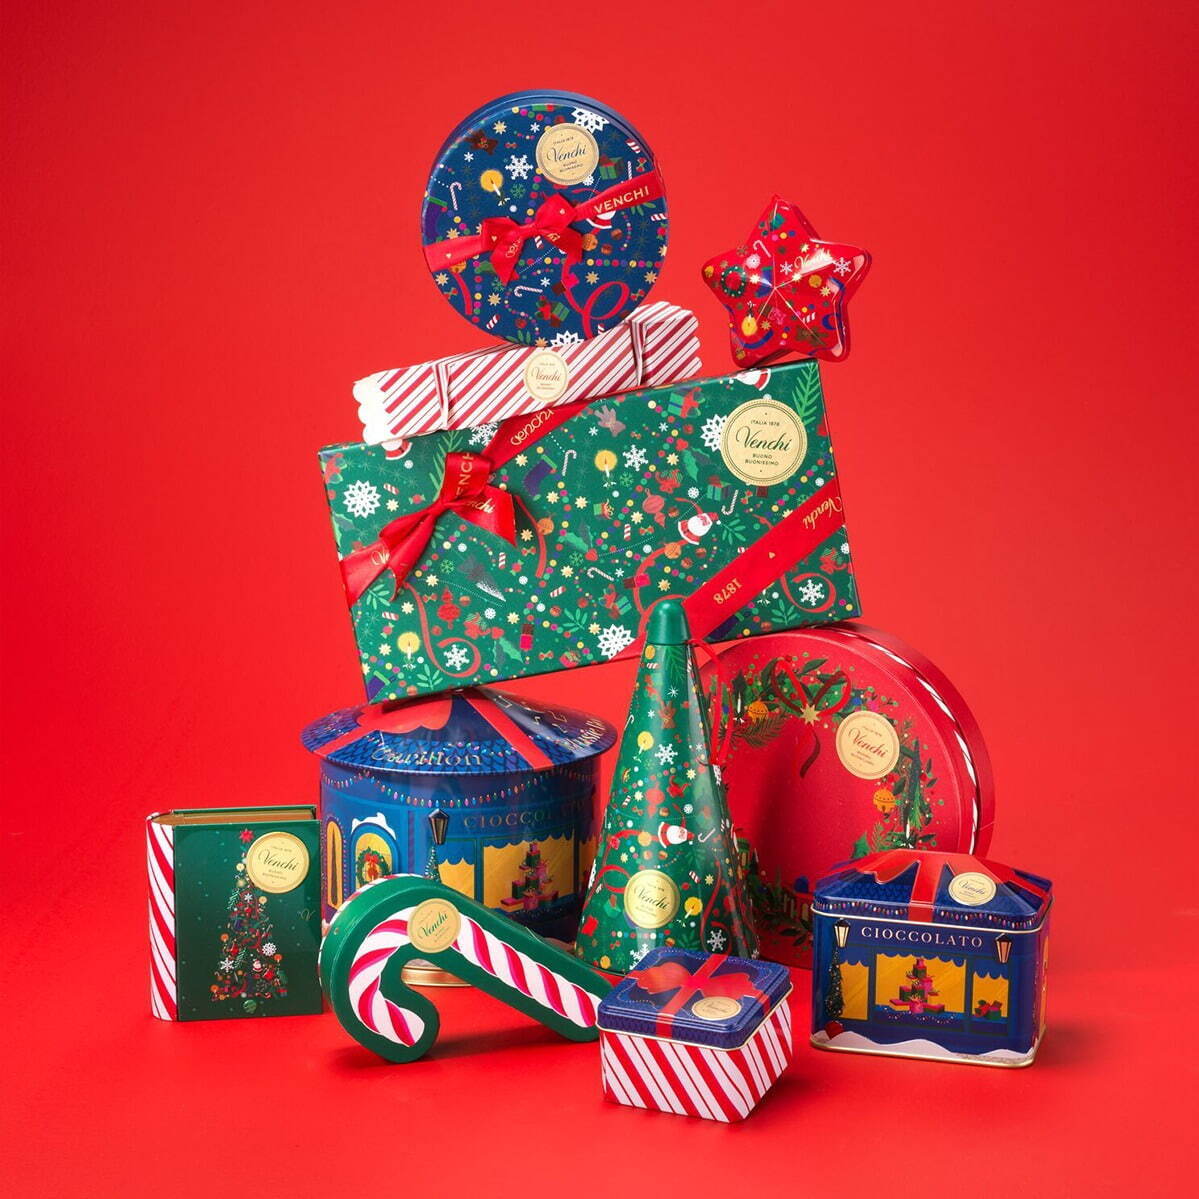 ヴェンキ23年クリスマス、“オルゴール付き”チョコレート缶や家型 